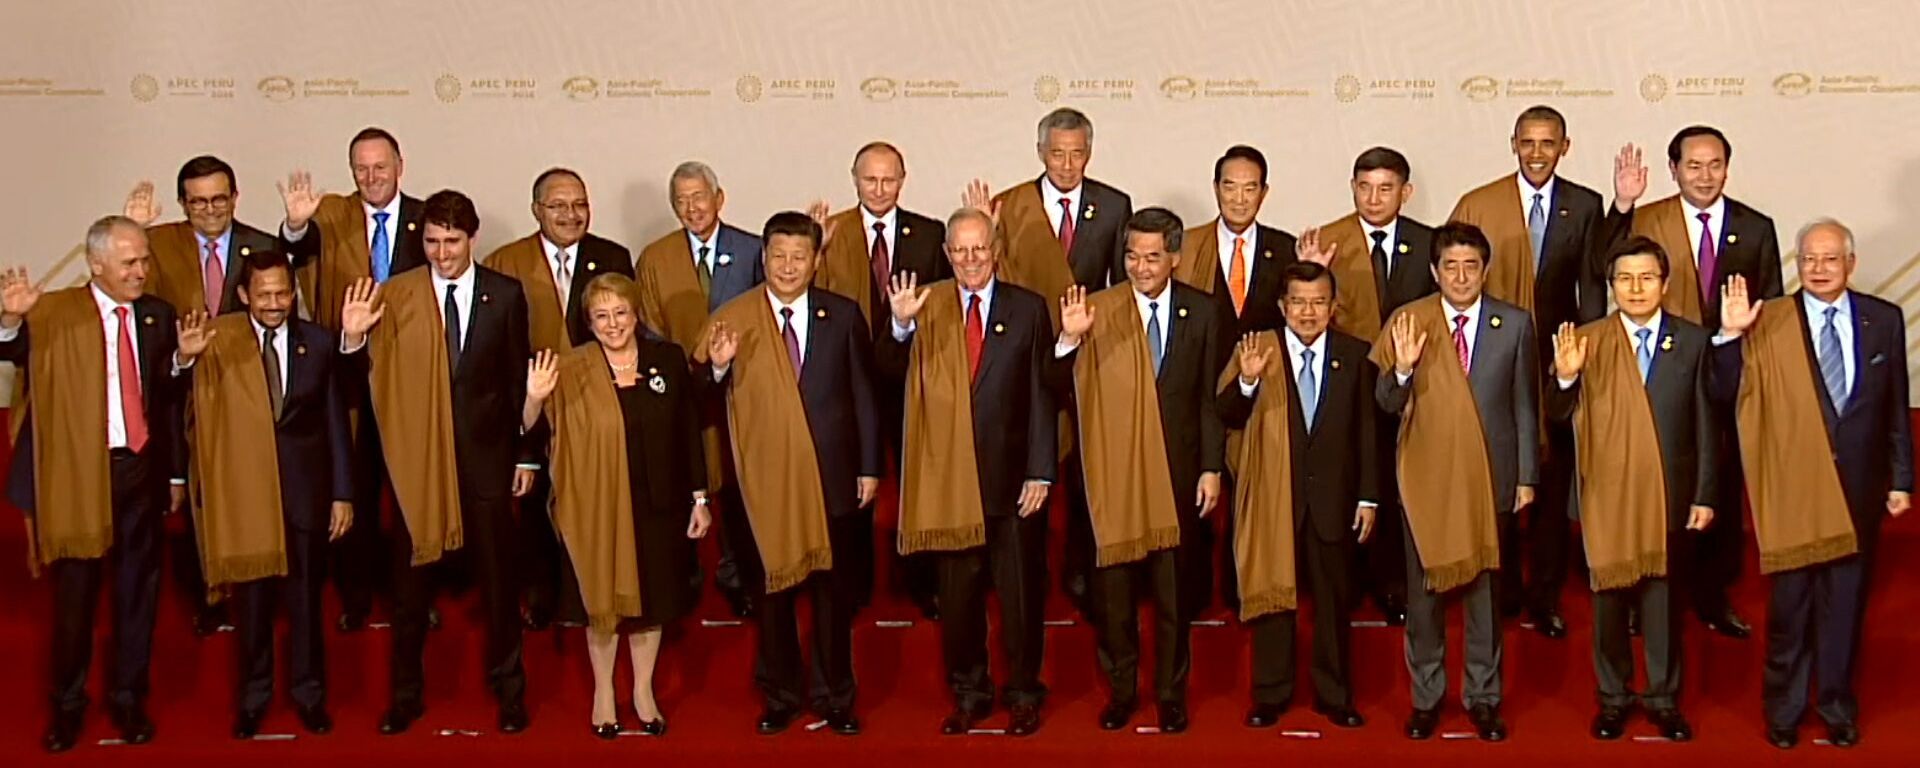 Лидеры стран АТЭС сфотографировались в перуанских накидках. Кадры церемонии - Sputnik Латвия, 1920, 21.11.2016